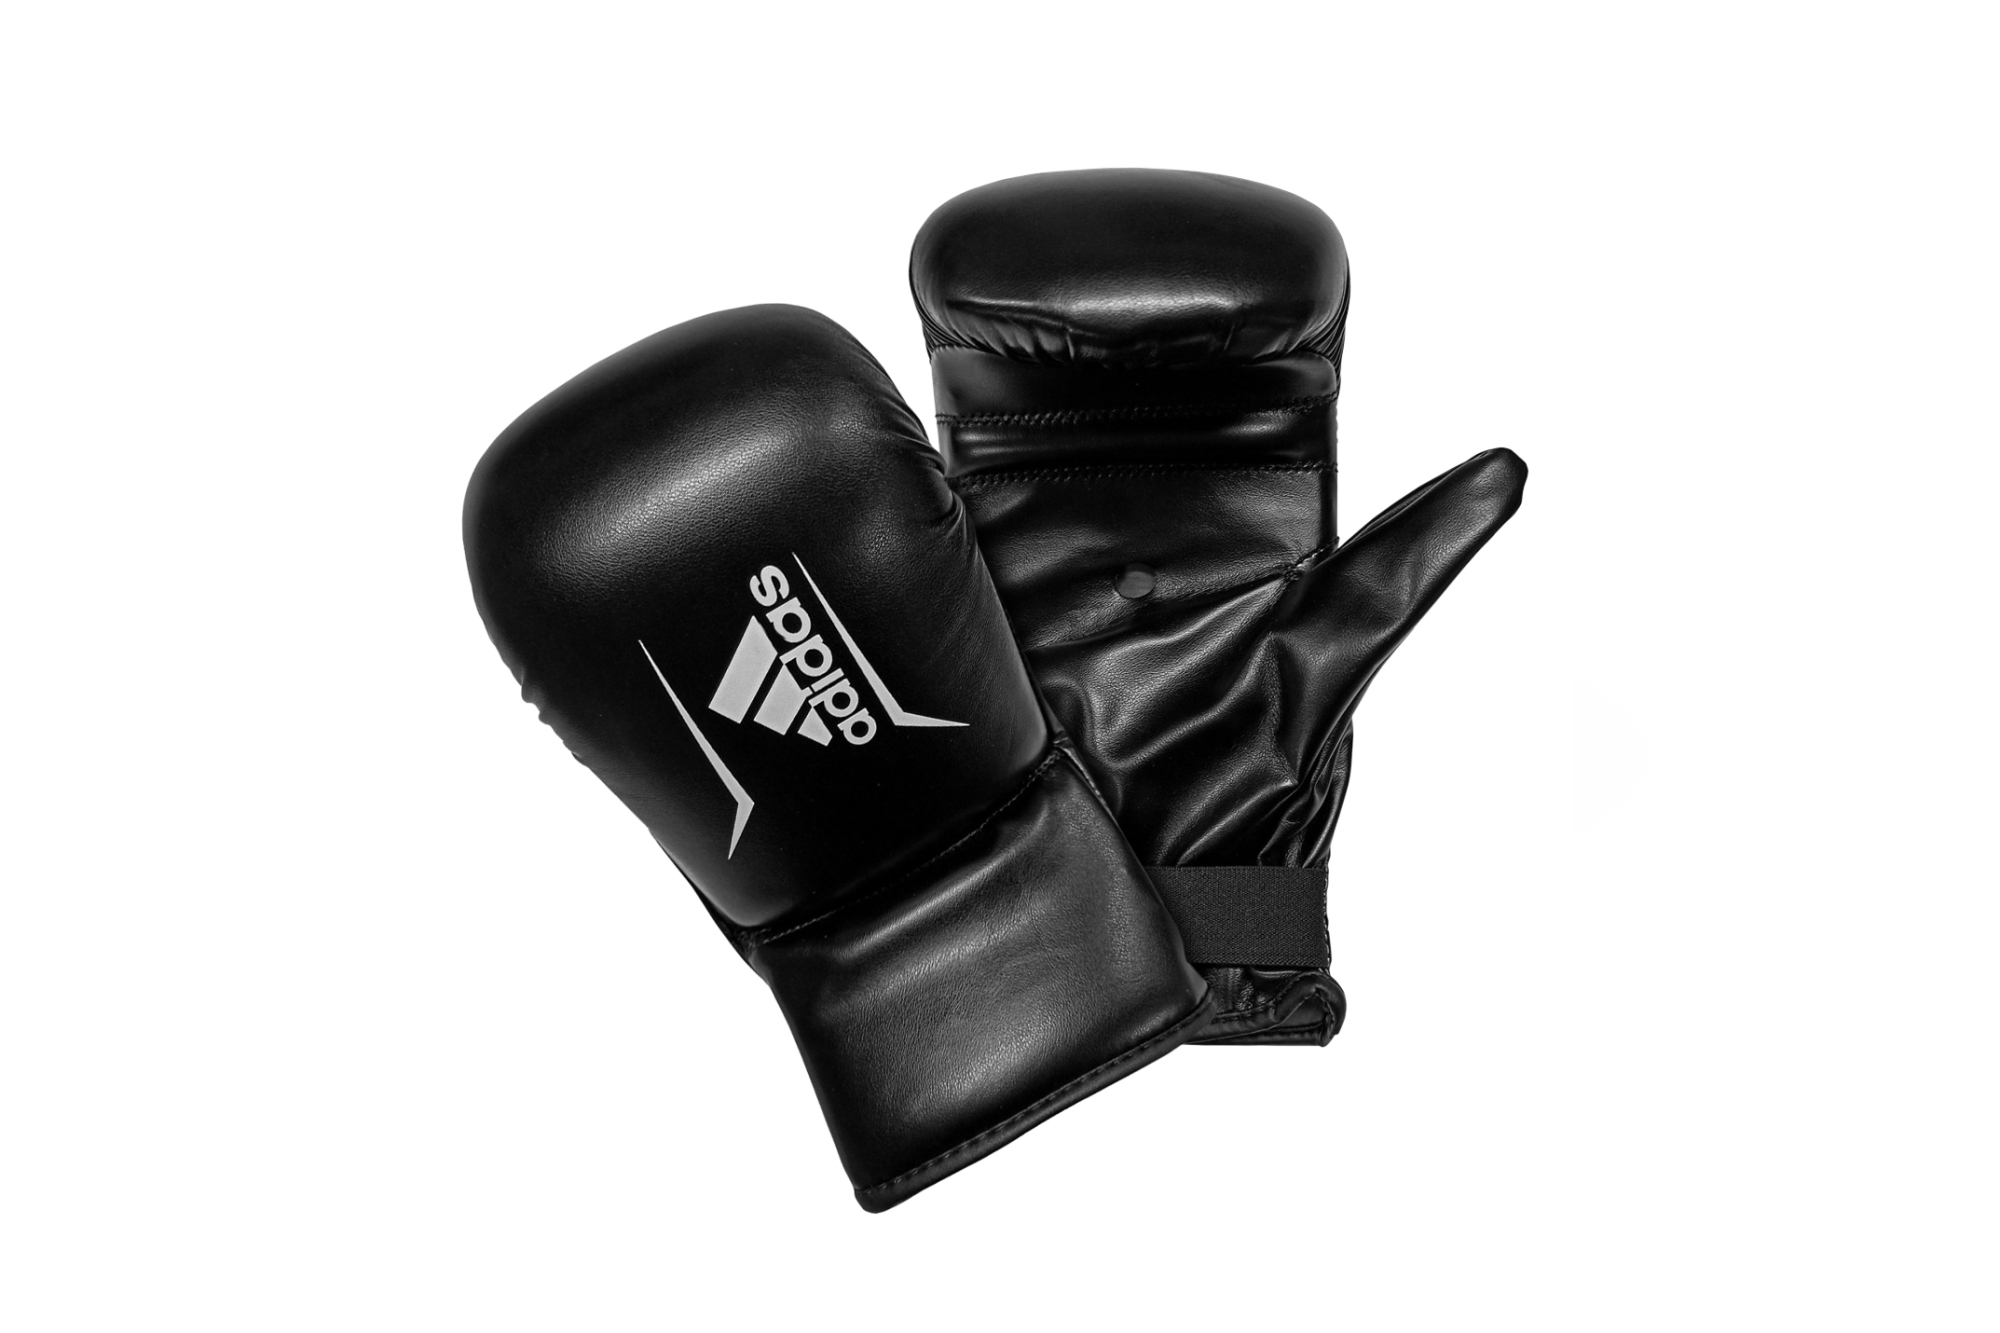 Avis et commentaires de Bande de boxe Adidas - Protection/Bandes boxe &  sous gants - lecoinduring